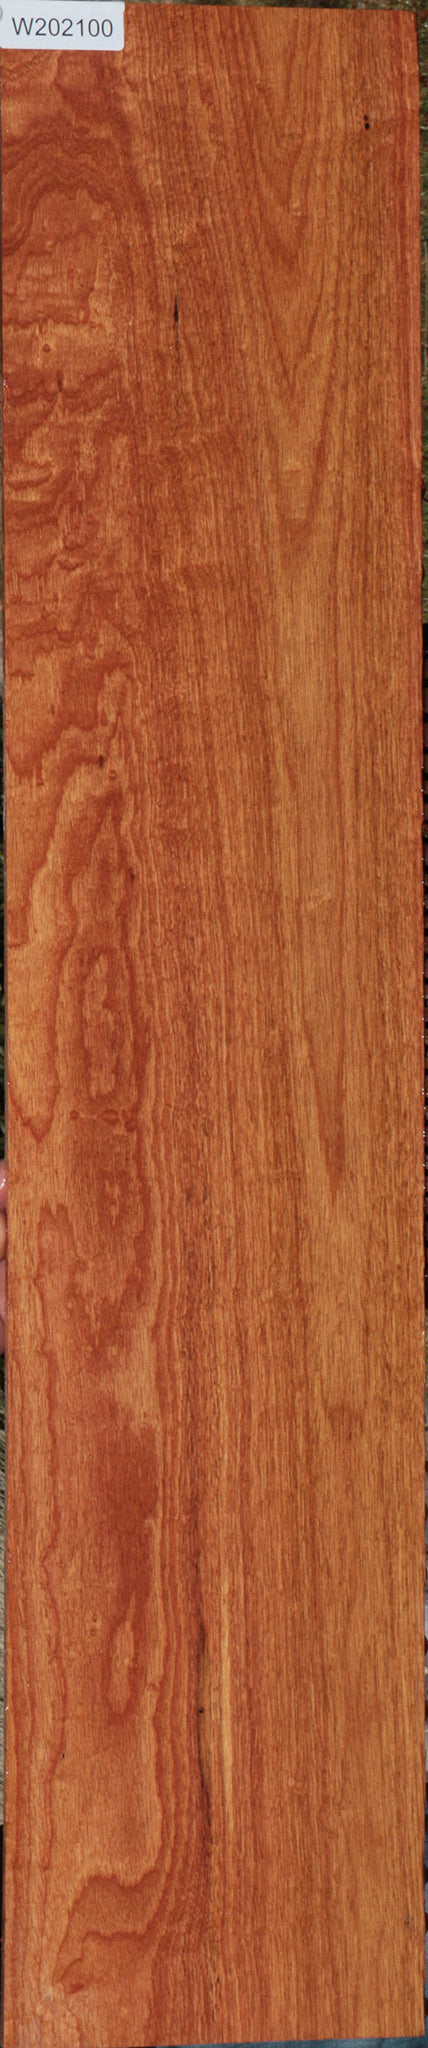 Macacauba Lumber